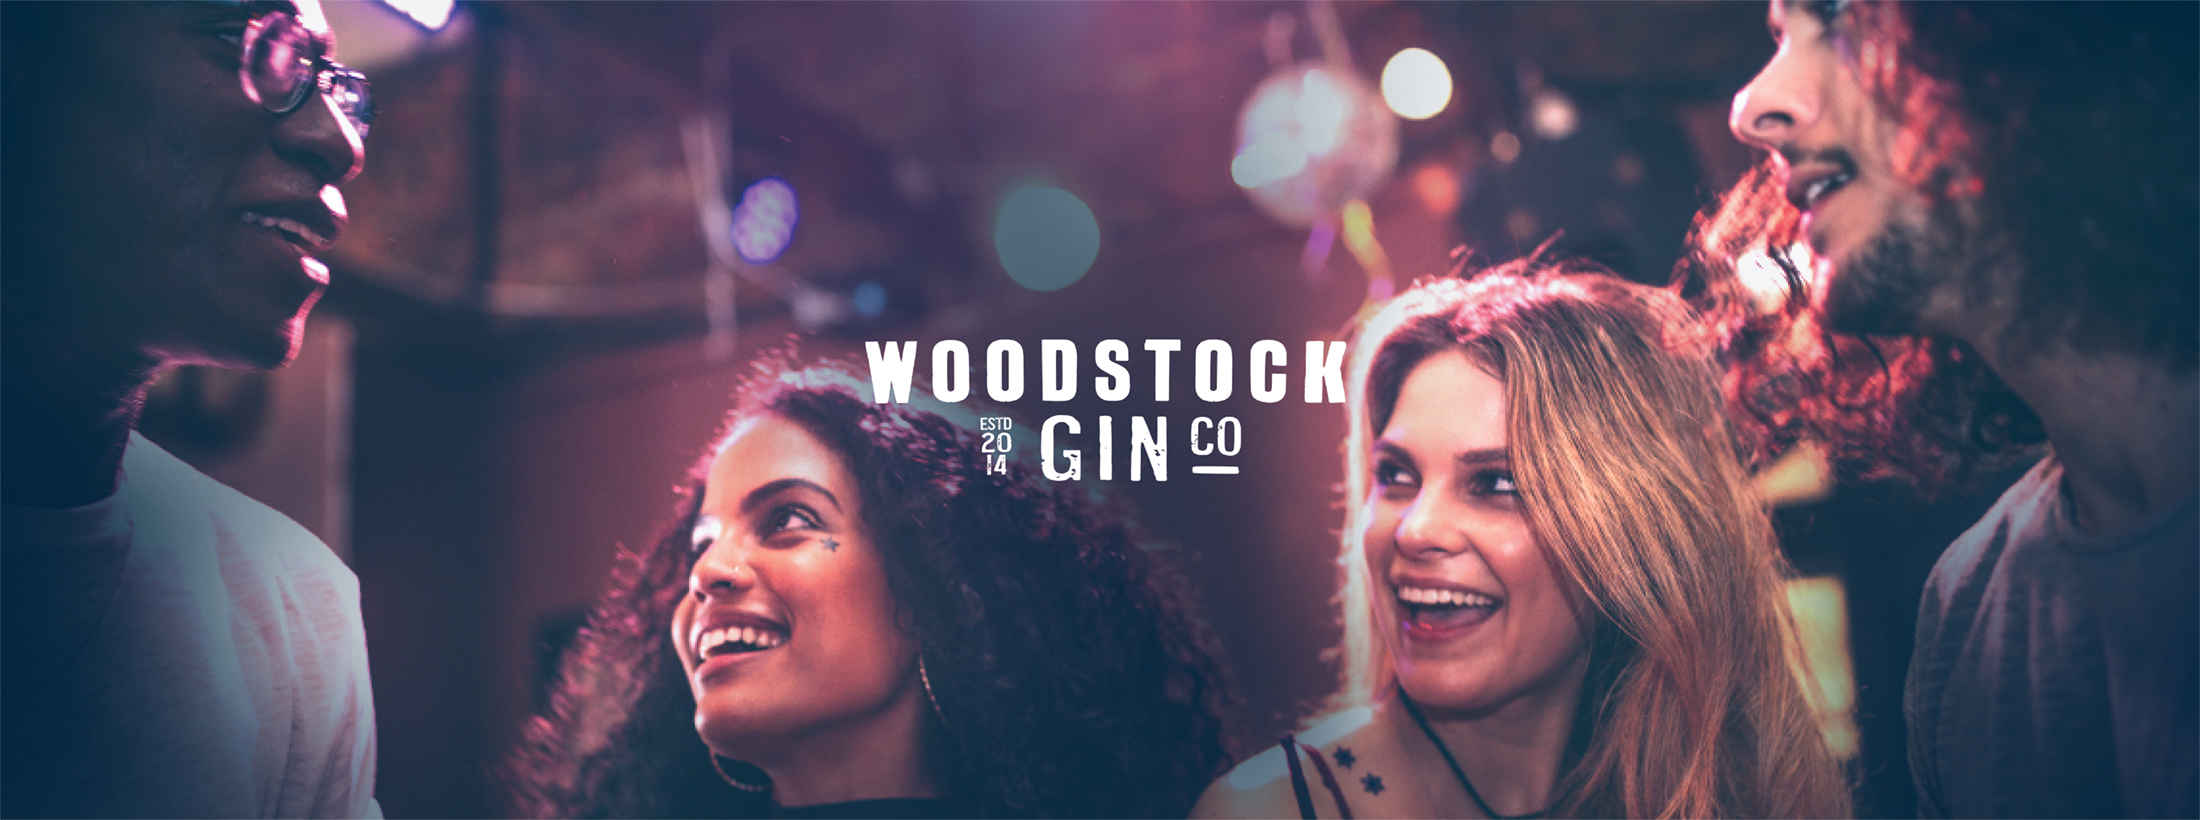 Edward Snell & Co. | Woodstock Gin